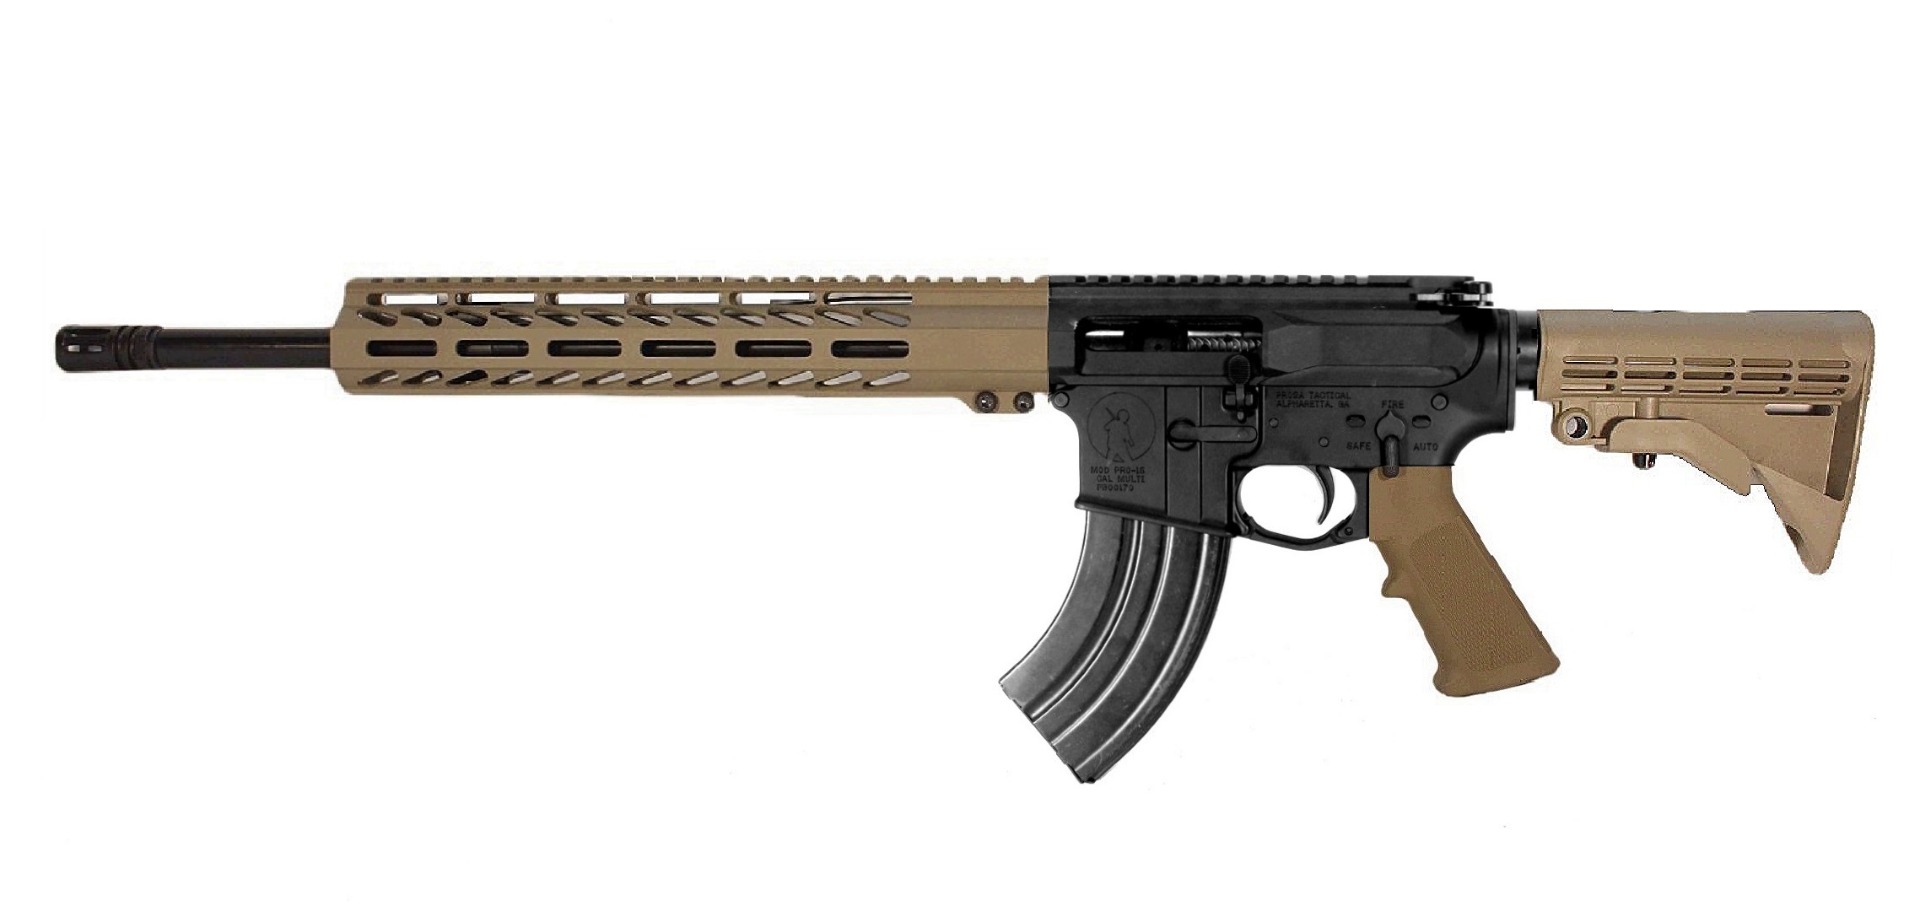 16 inch LEFT HAND 7.62x39 AR15 Rifle